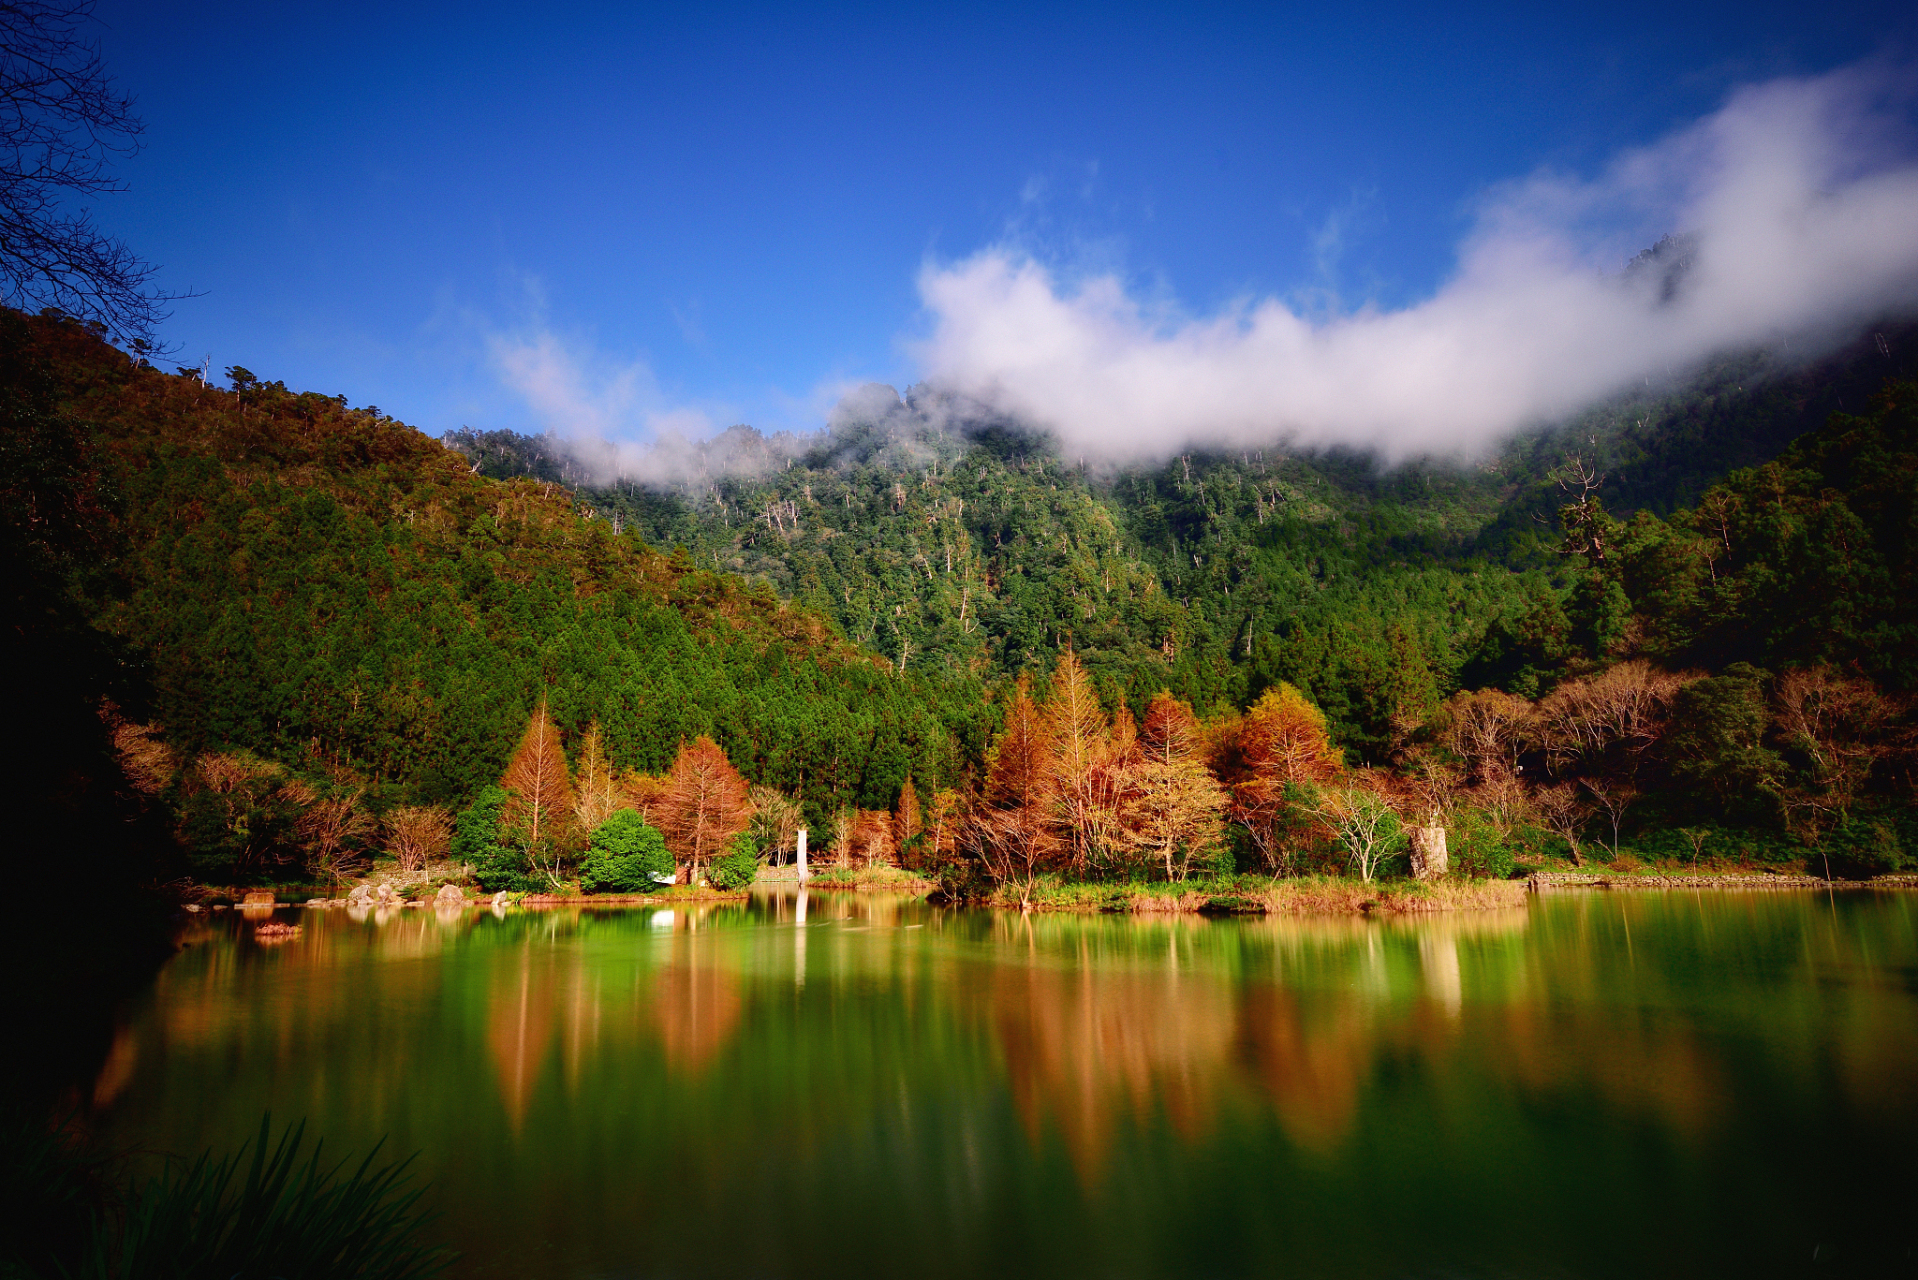 藏语米亚罗,译为好玩的坝子,米亚罗风景区是四川省最大的红叶风景区